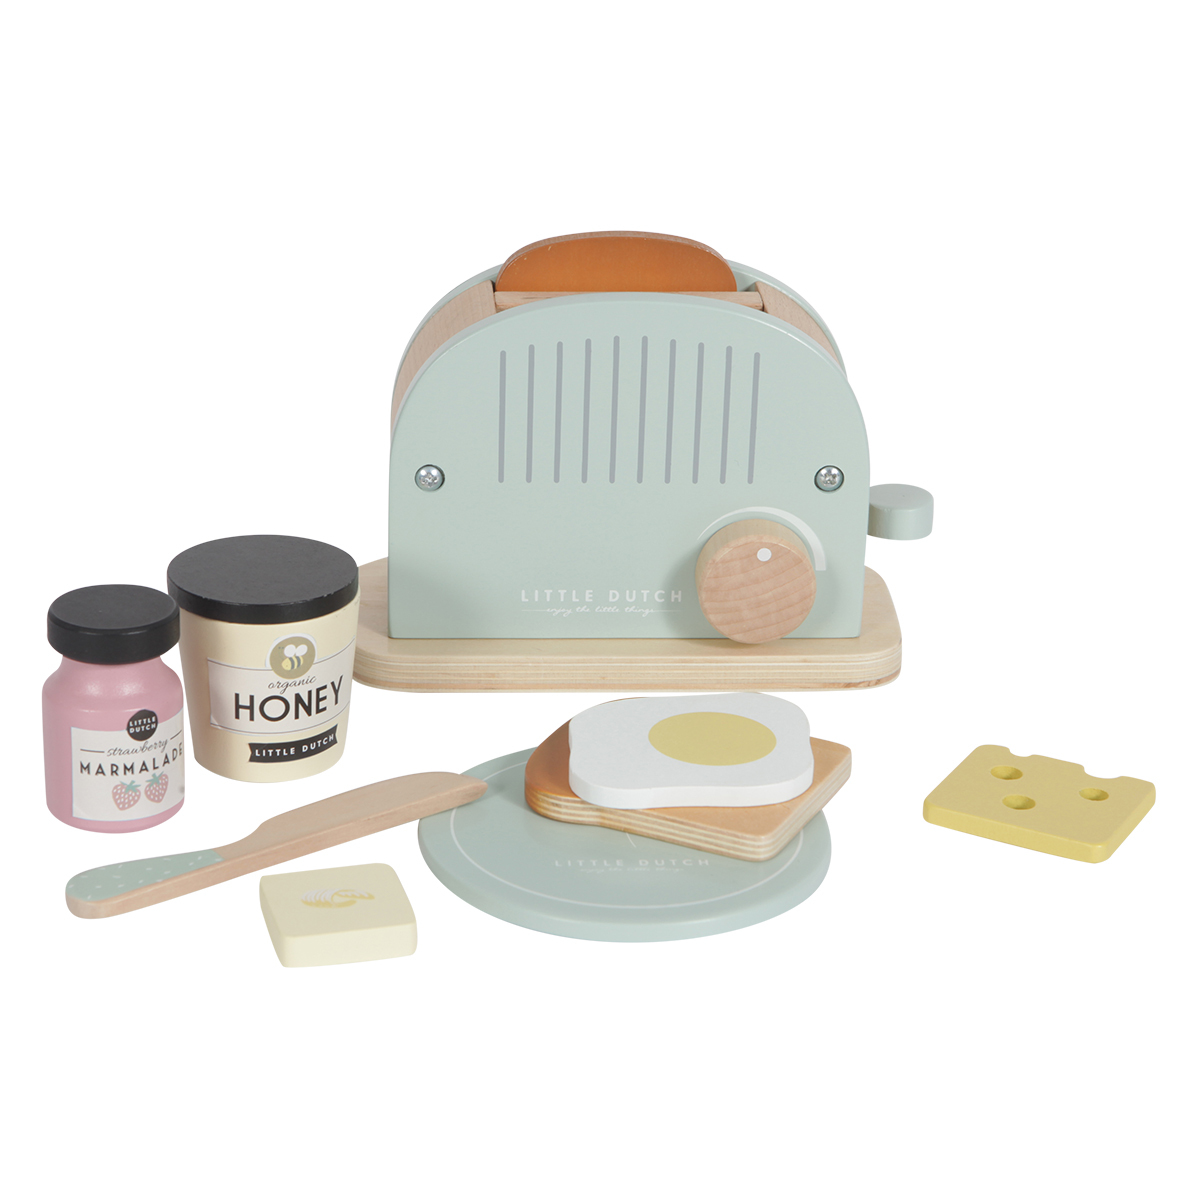 grille pain avec toasts cuisine  CL6 miniature,maison de poupée,vitrine,toast 